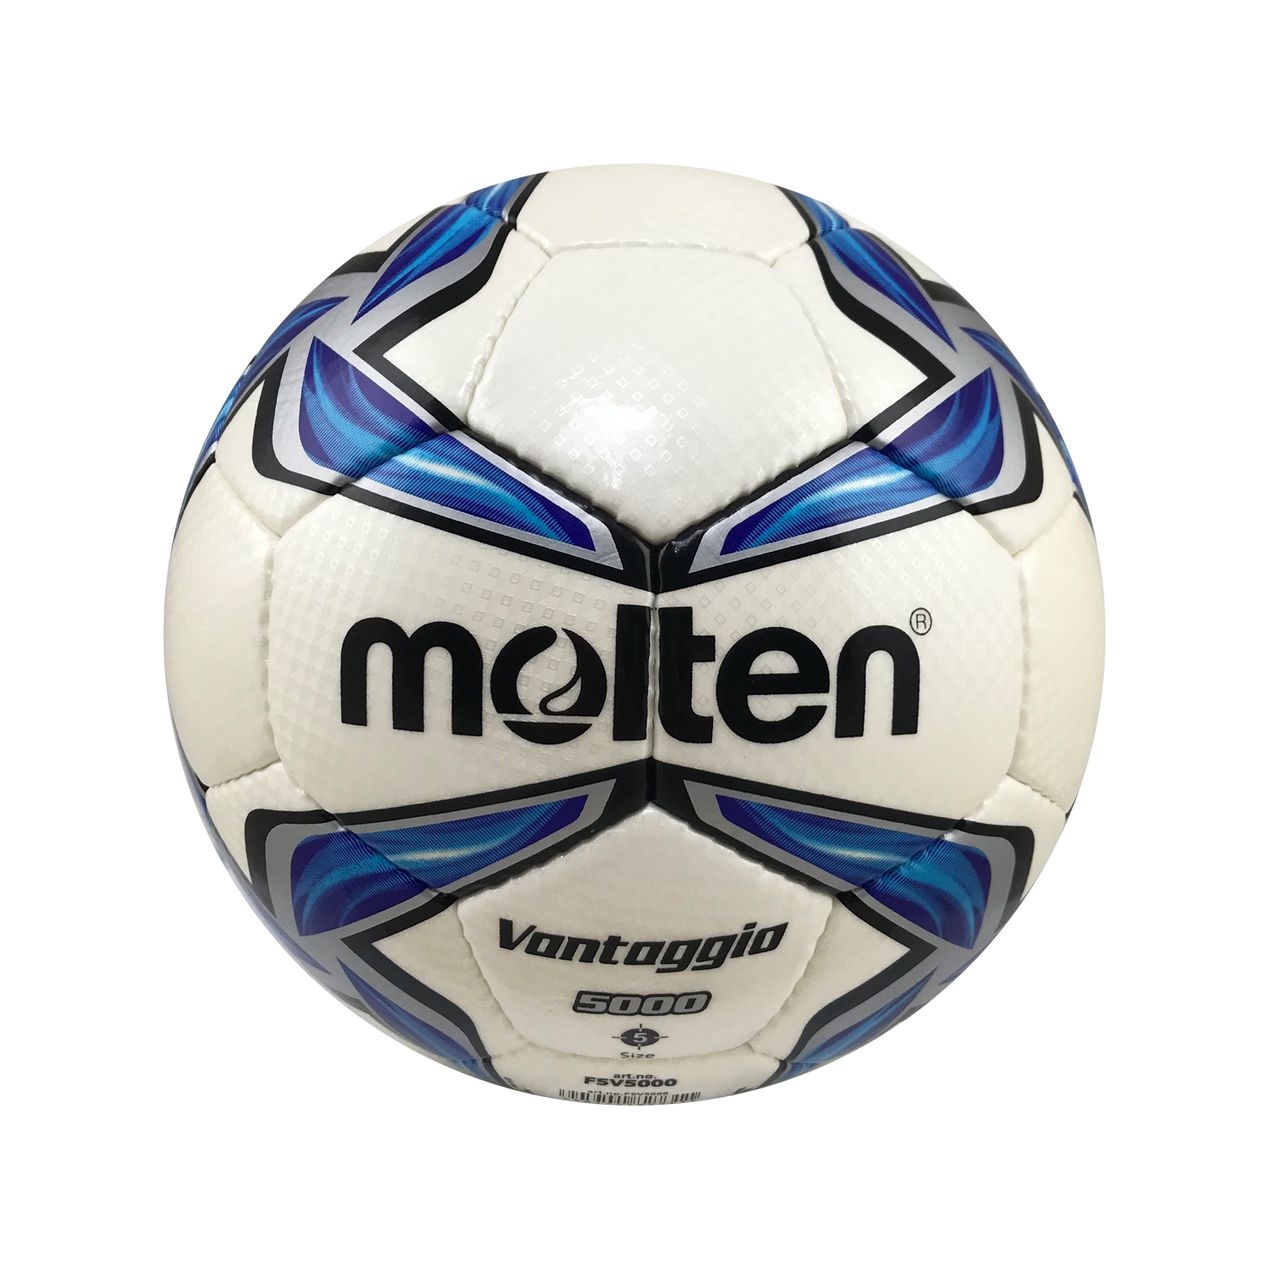 توپ فوتبال مولتن مدل  توپ فوتبال ونتاژیو 5000 کد GKI 2040